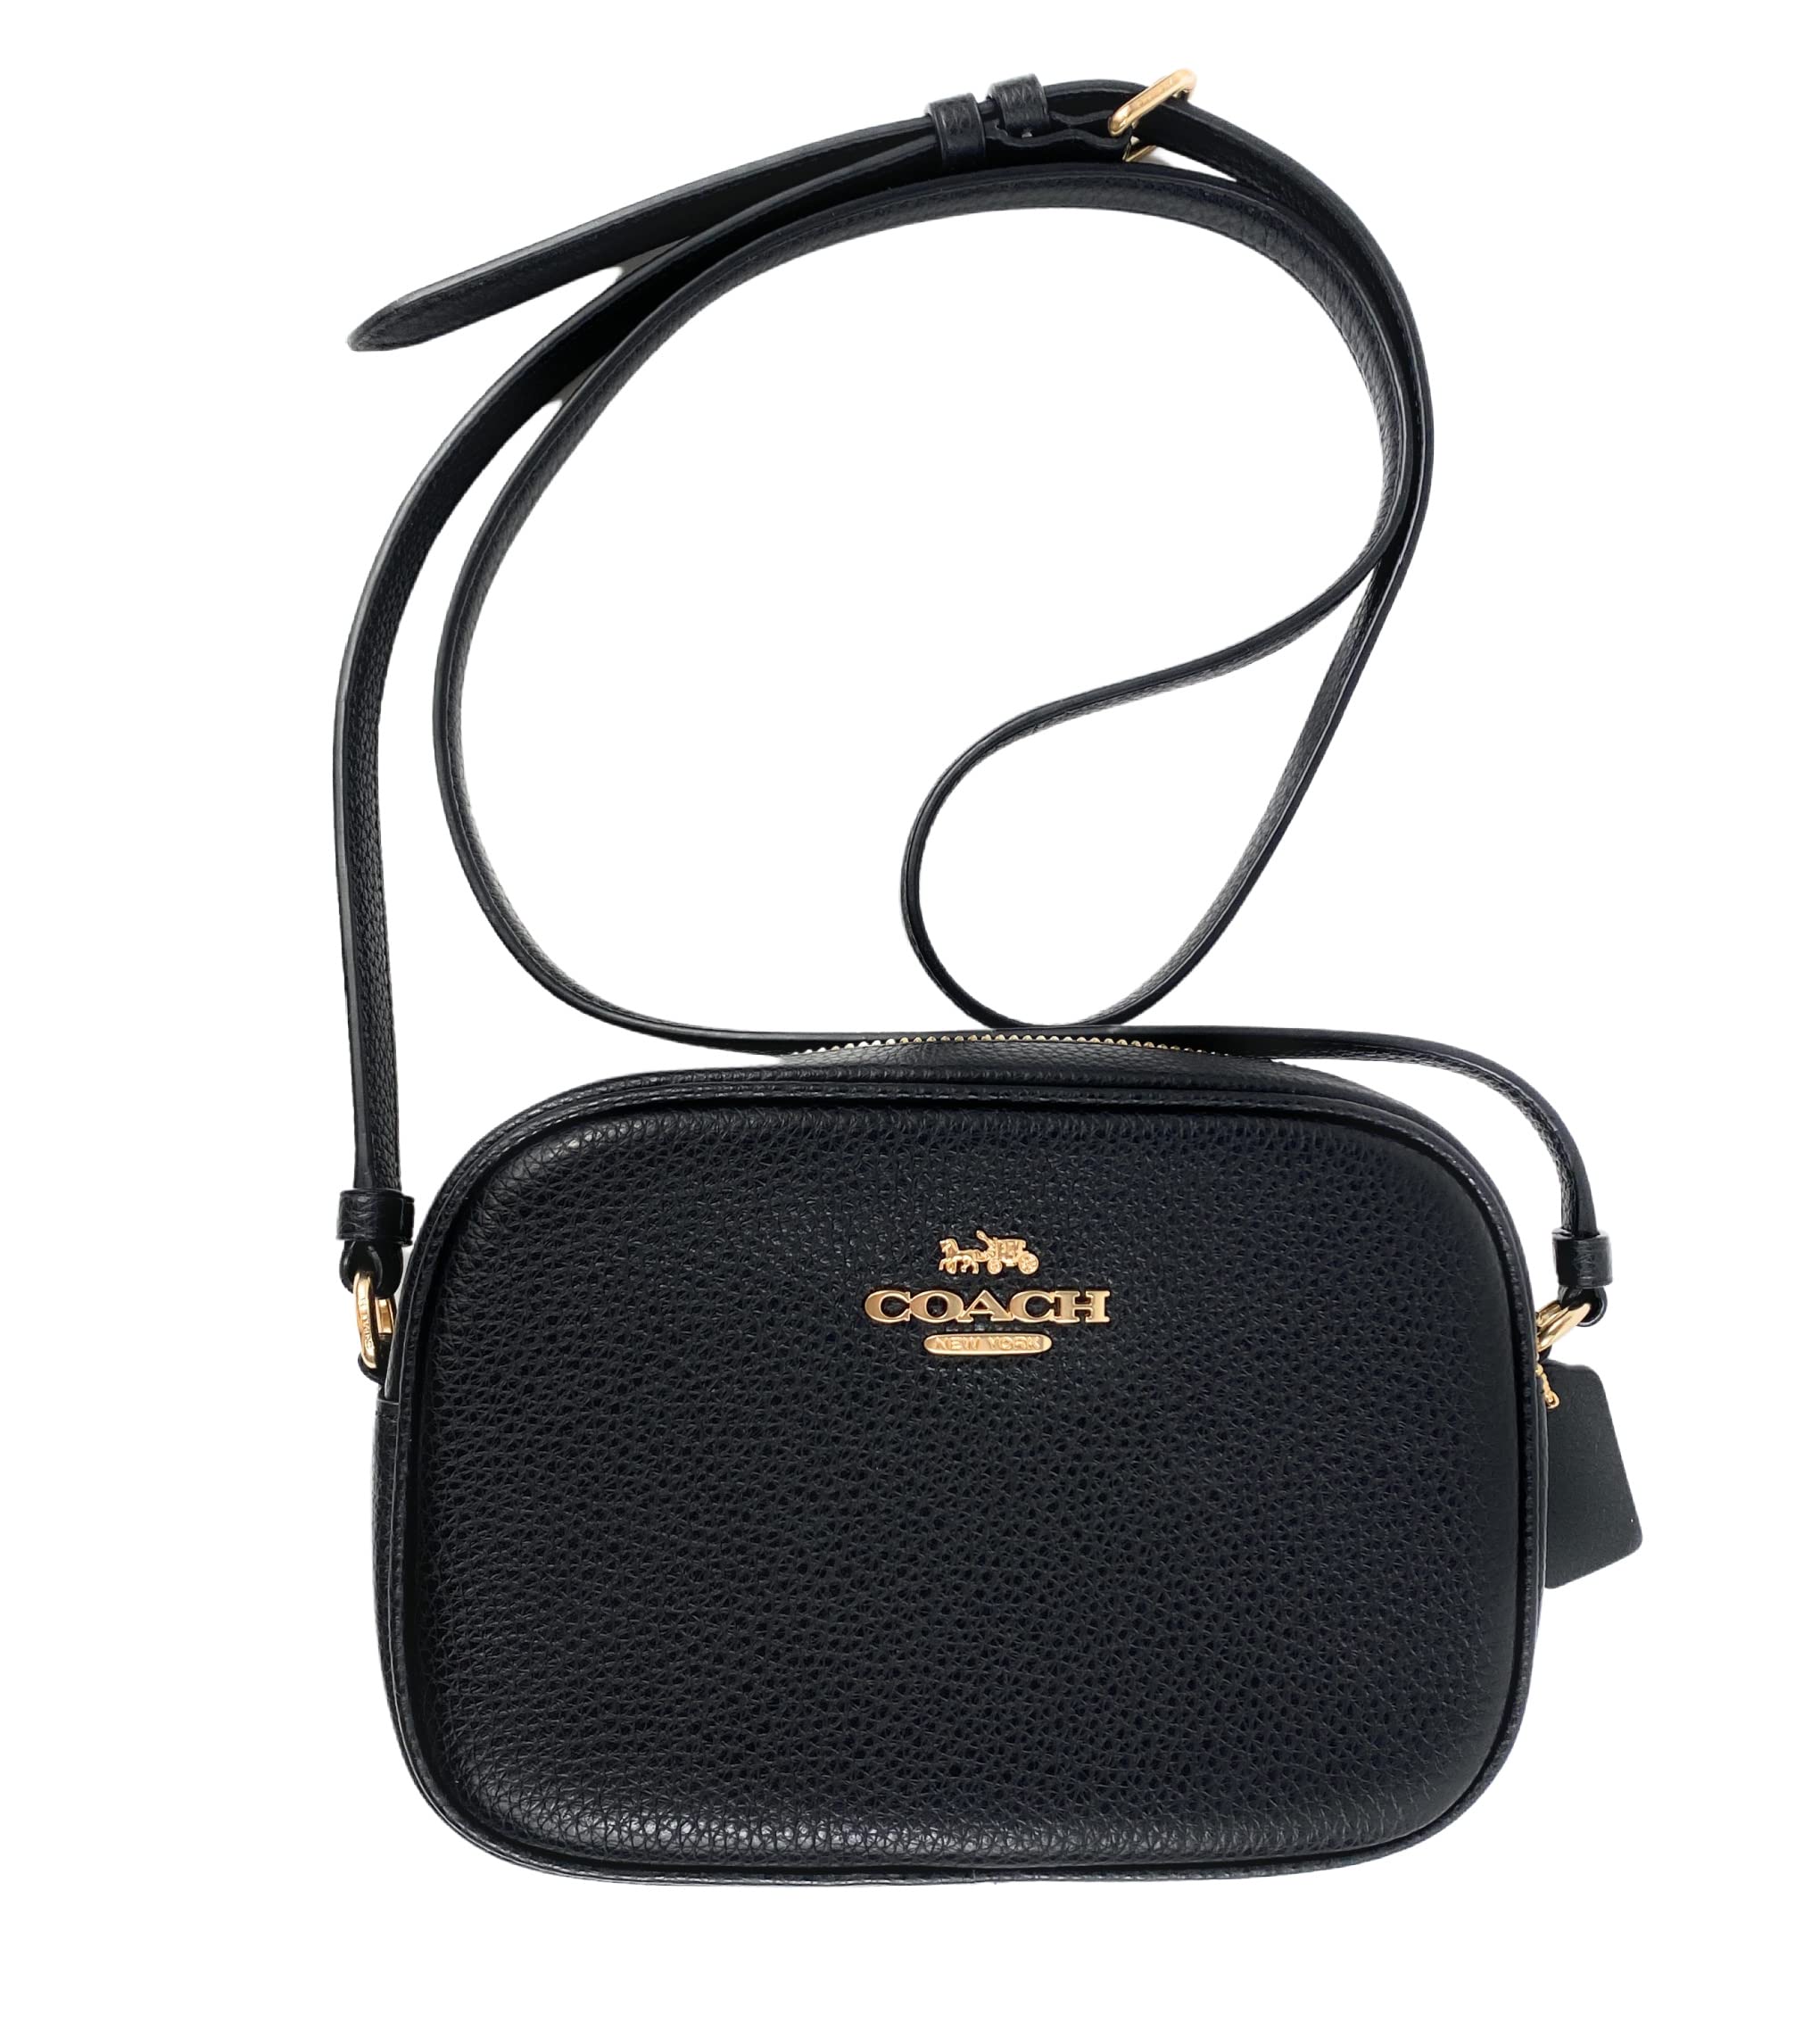 COACH Mini Jamie Camera Bag in Black